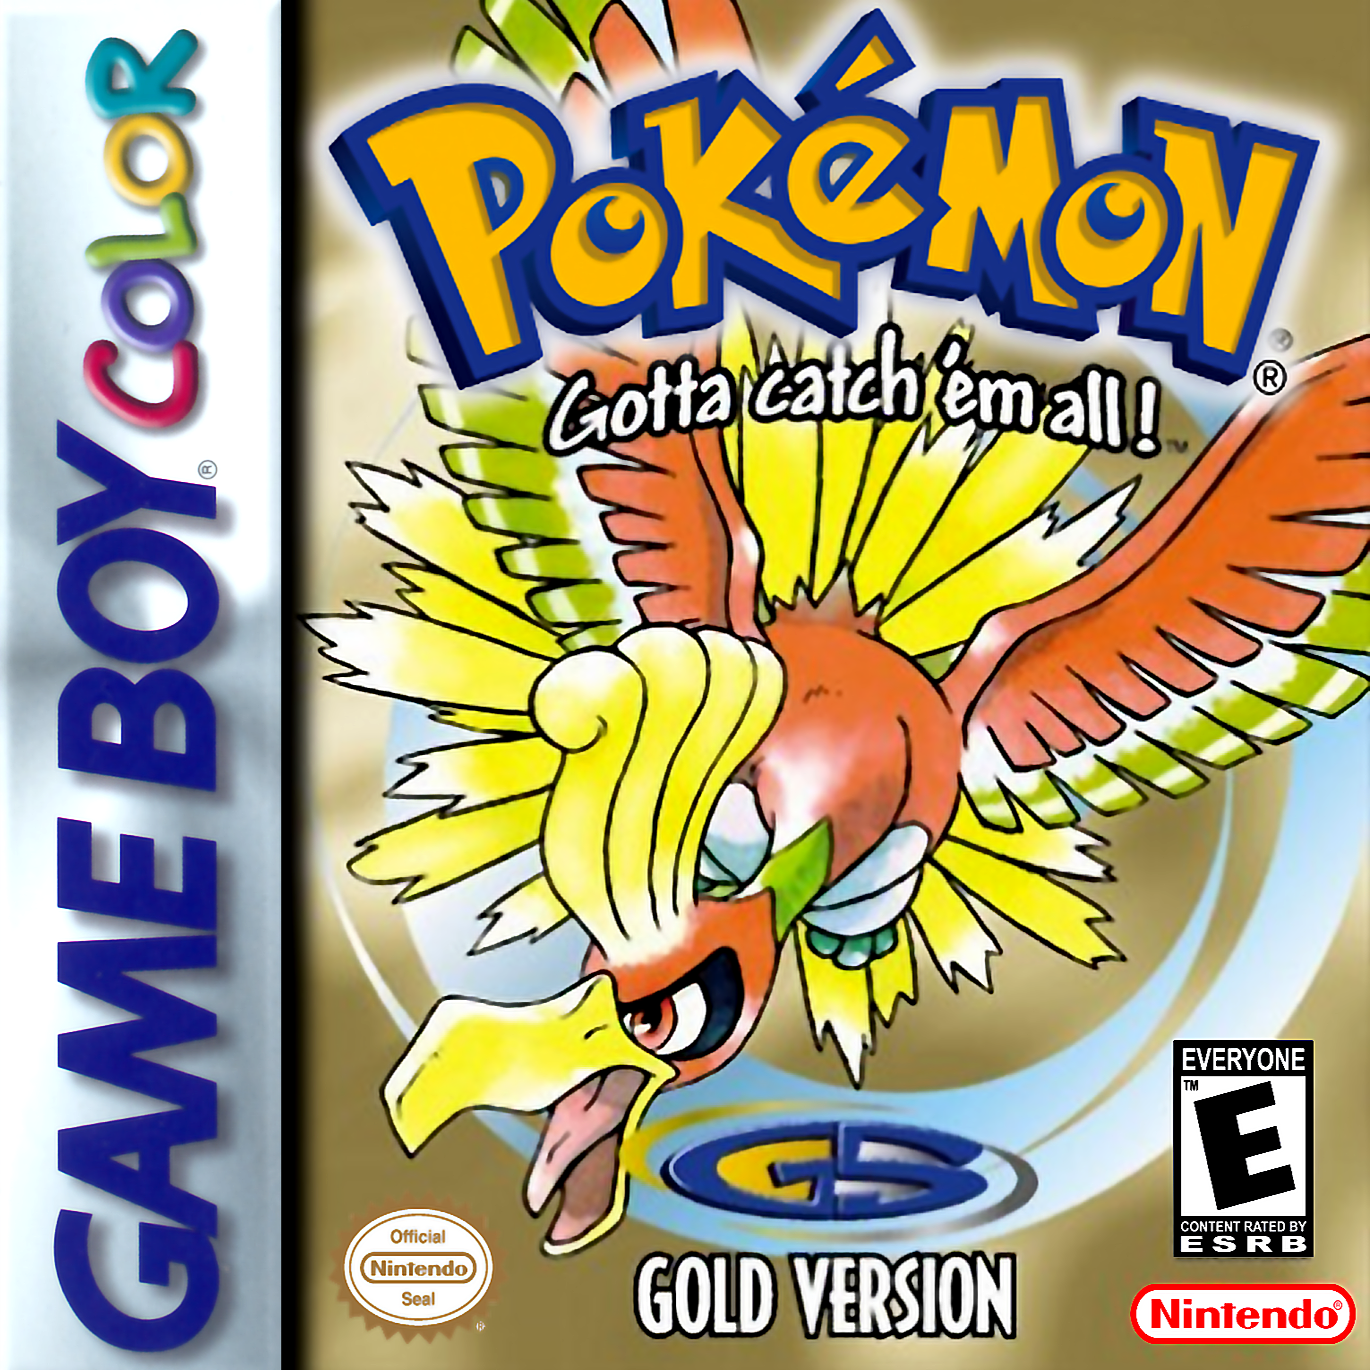 Pokémon Shiny Gold Sigma Images - LaunchBox Games Database